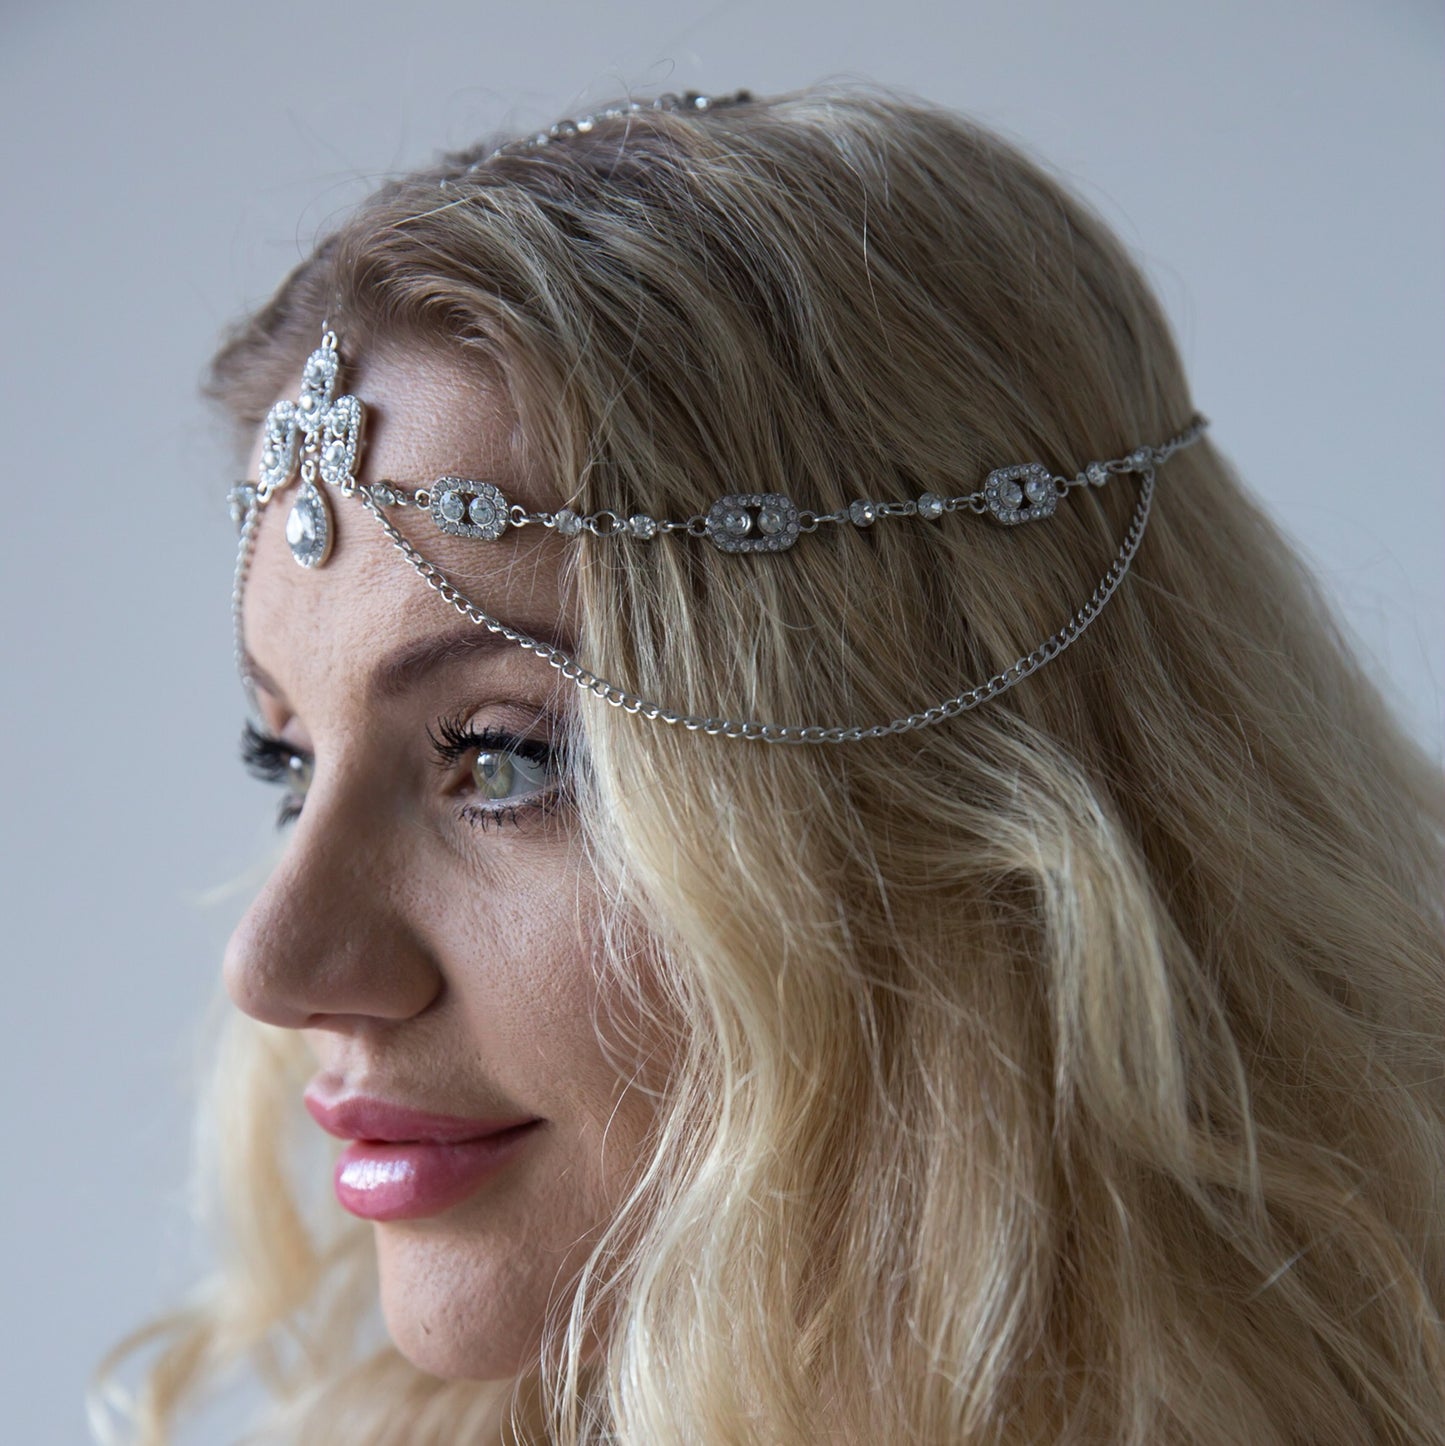 Arabian Princess Head Chain